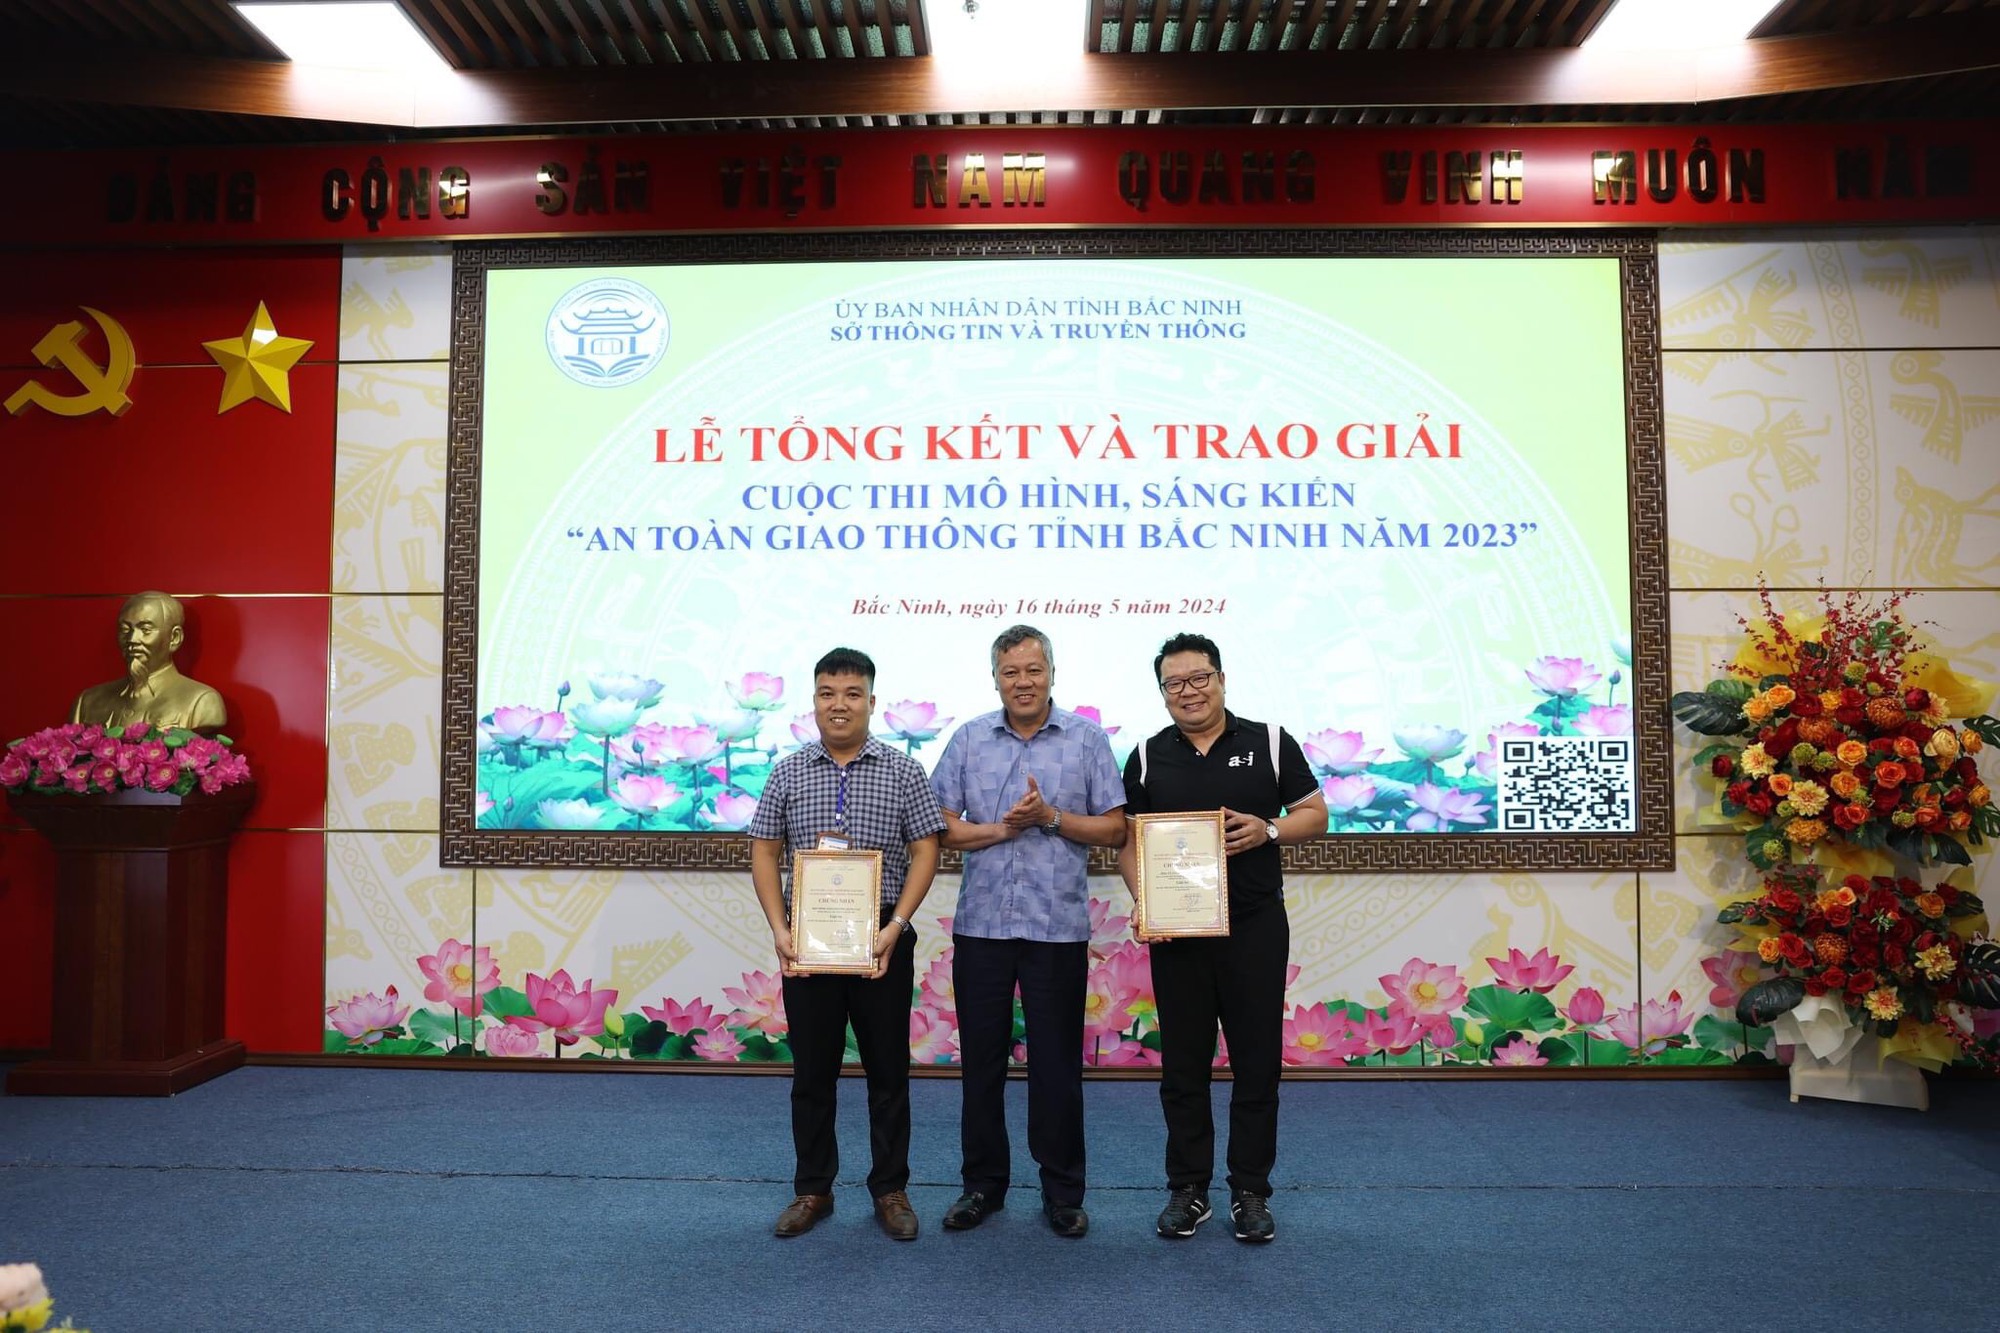 Hội Nông dân phường Bồng Lai đạt giải cuộc thi mô hình, sáng kiến an toàn giao thông tỉnh Bắc Ninh- Ảnh 1.